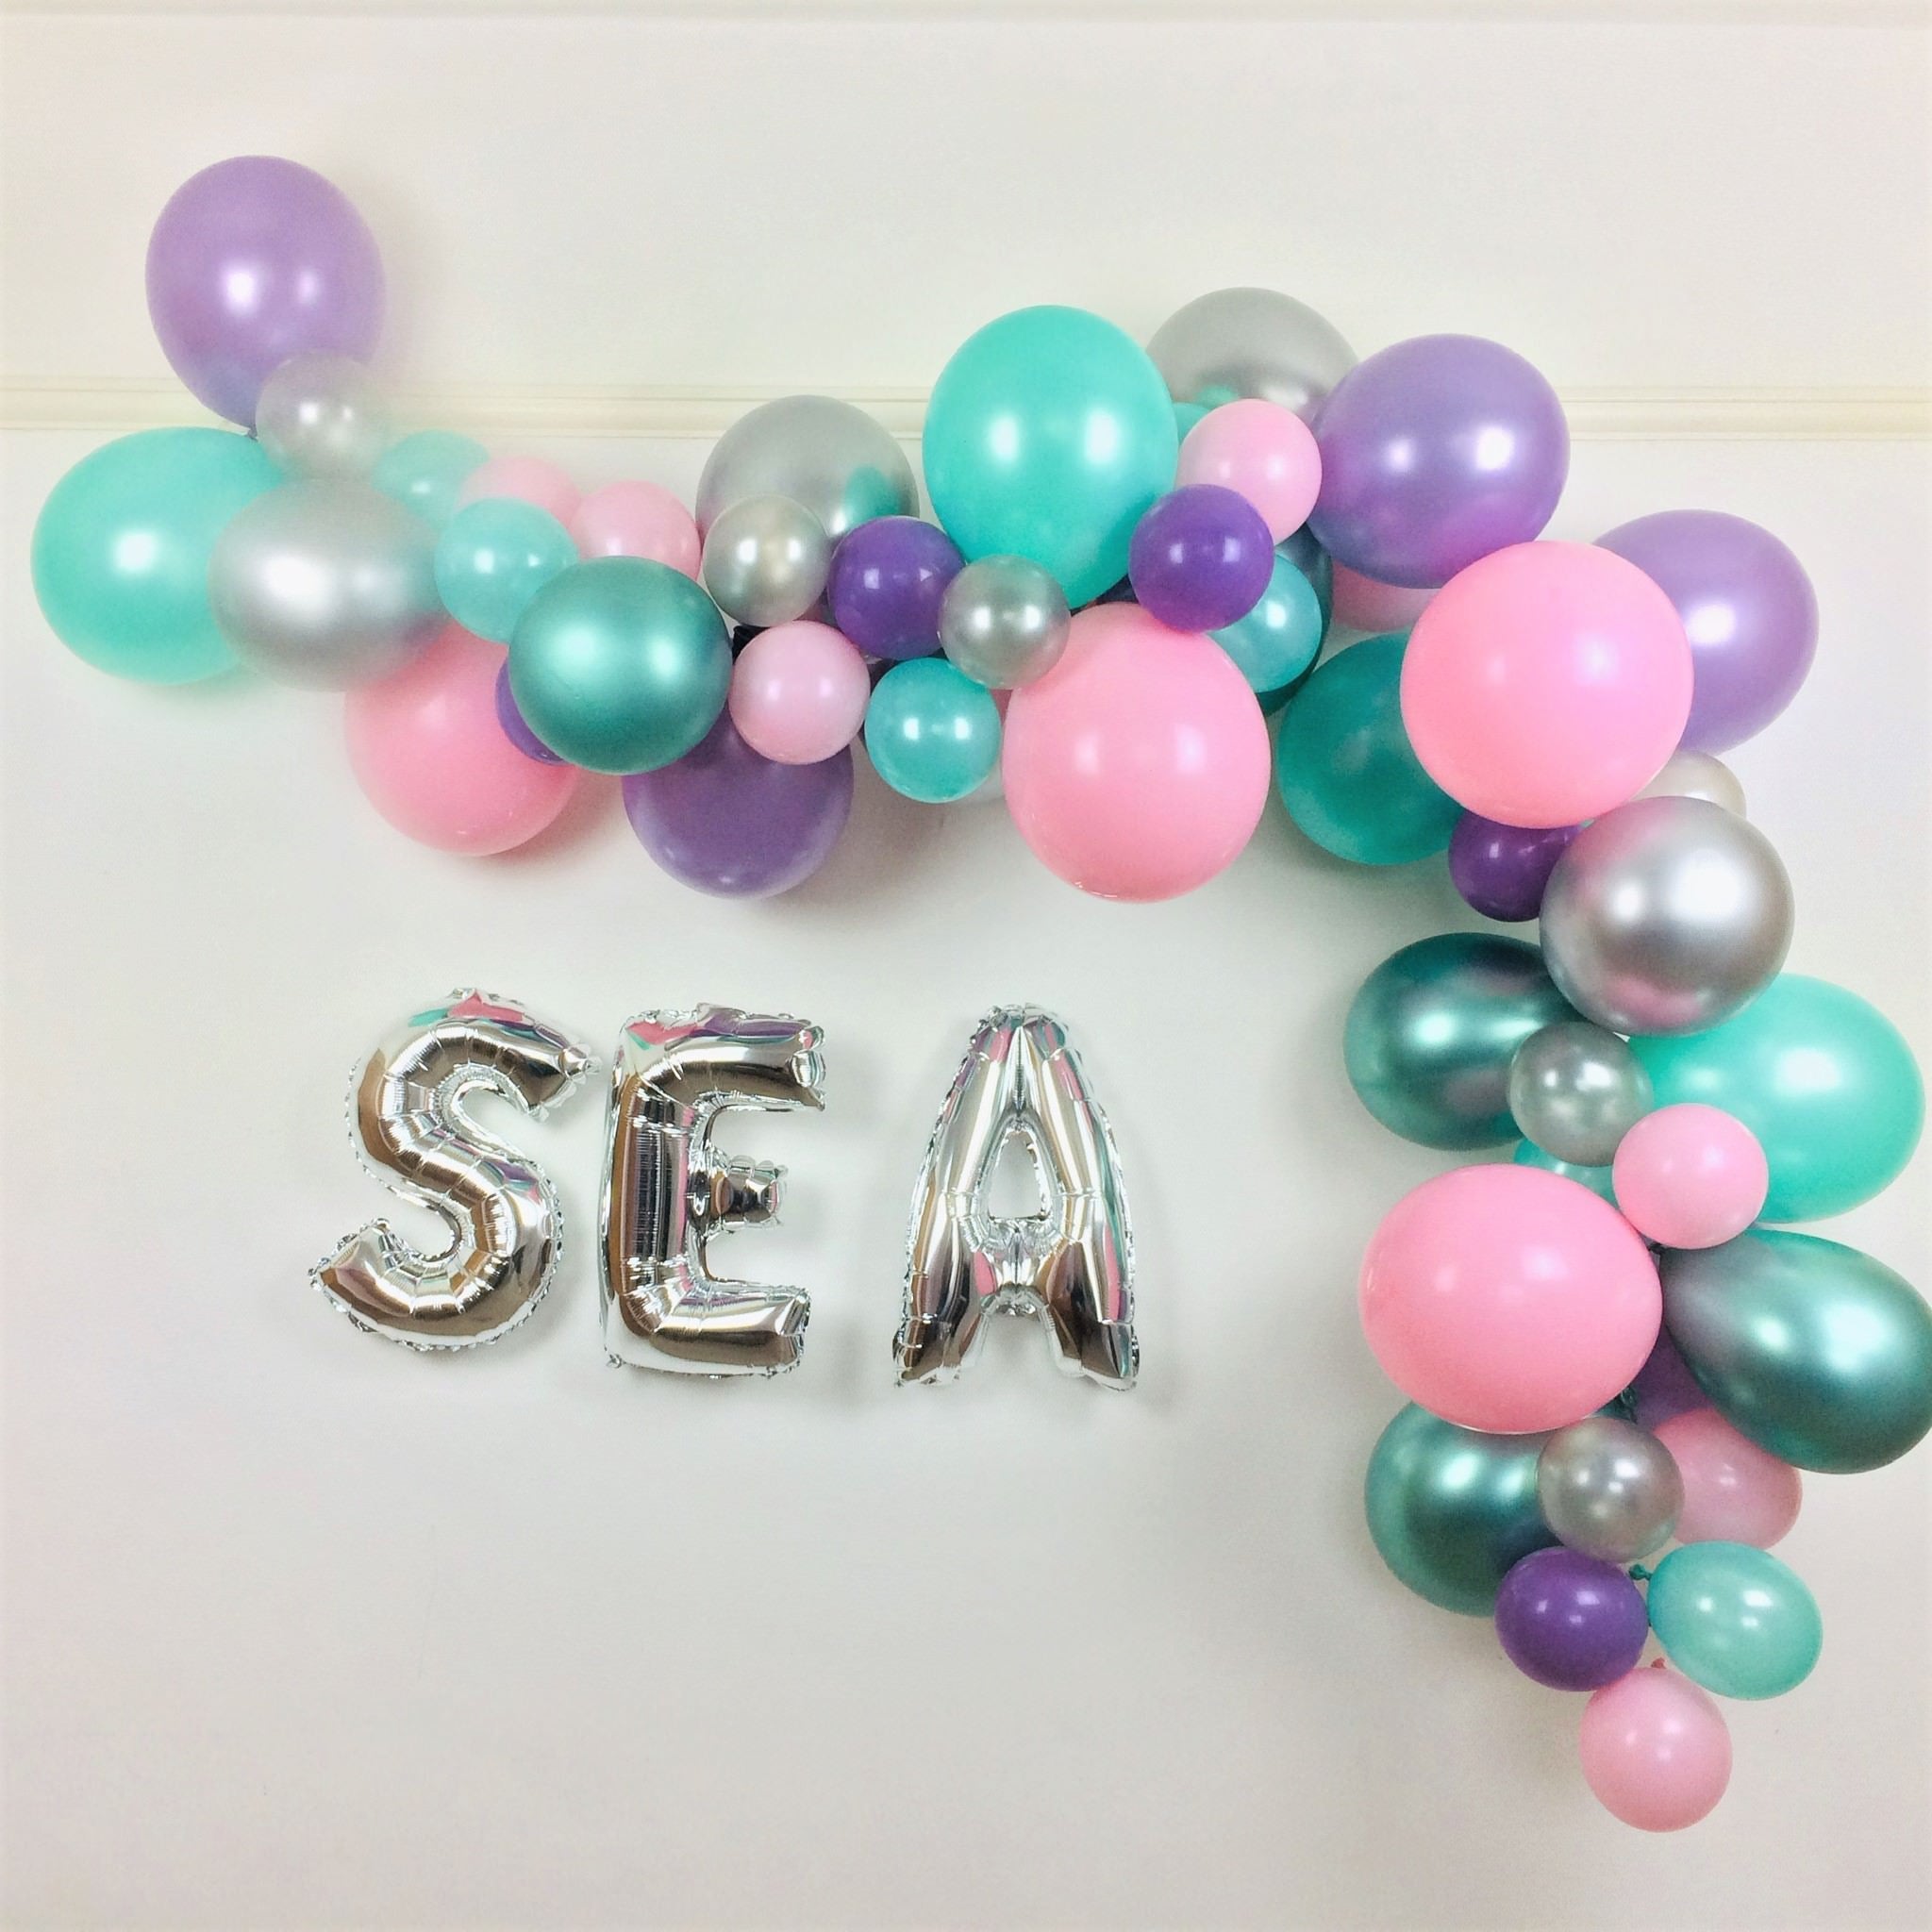 Mermaid Dreams Balloon Cloud Kit I Mermaid Party Decoration I My Dream Party Shop I UK